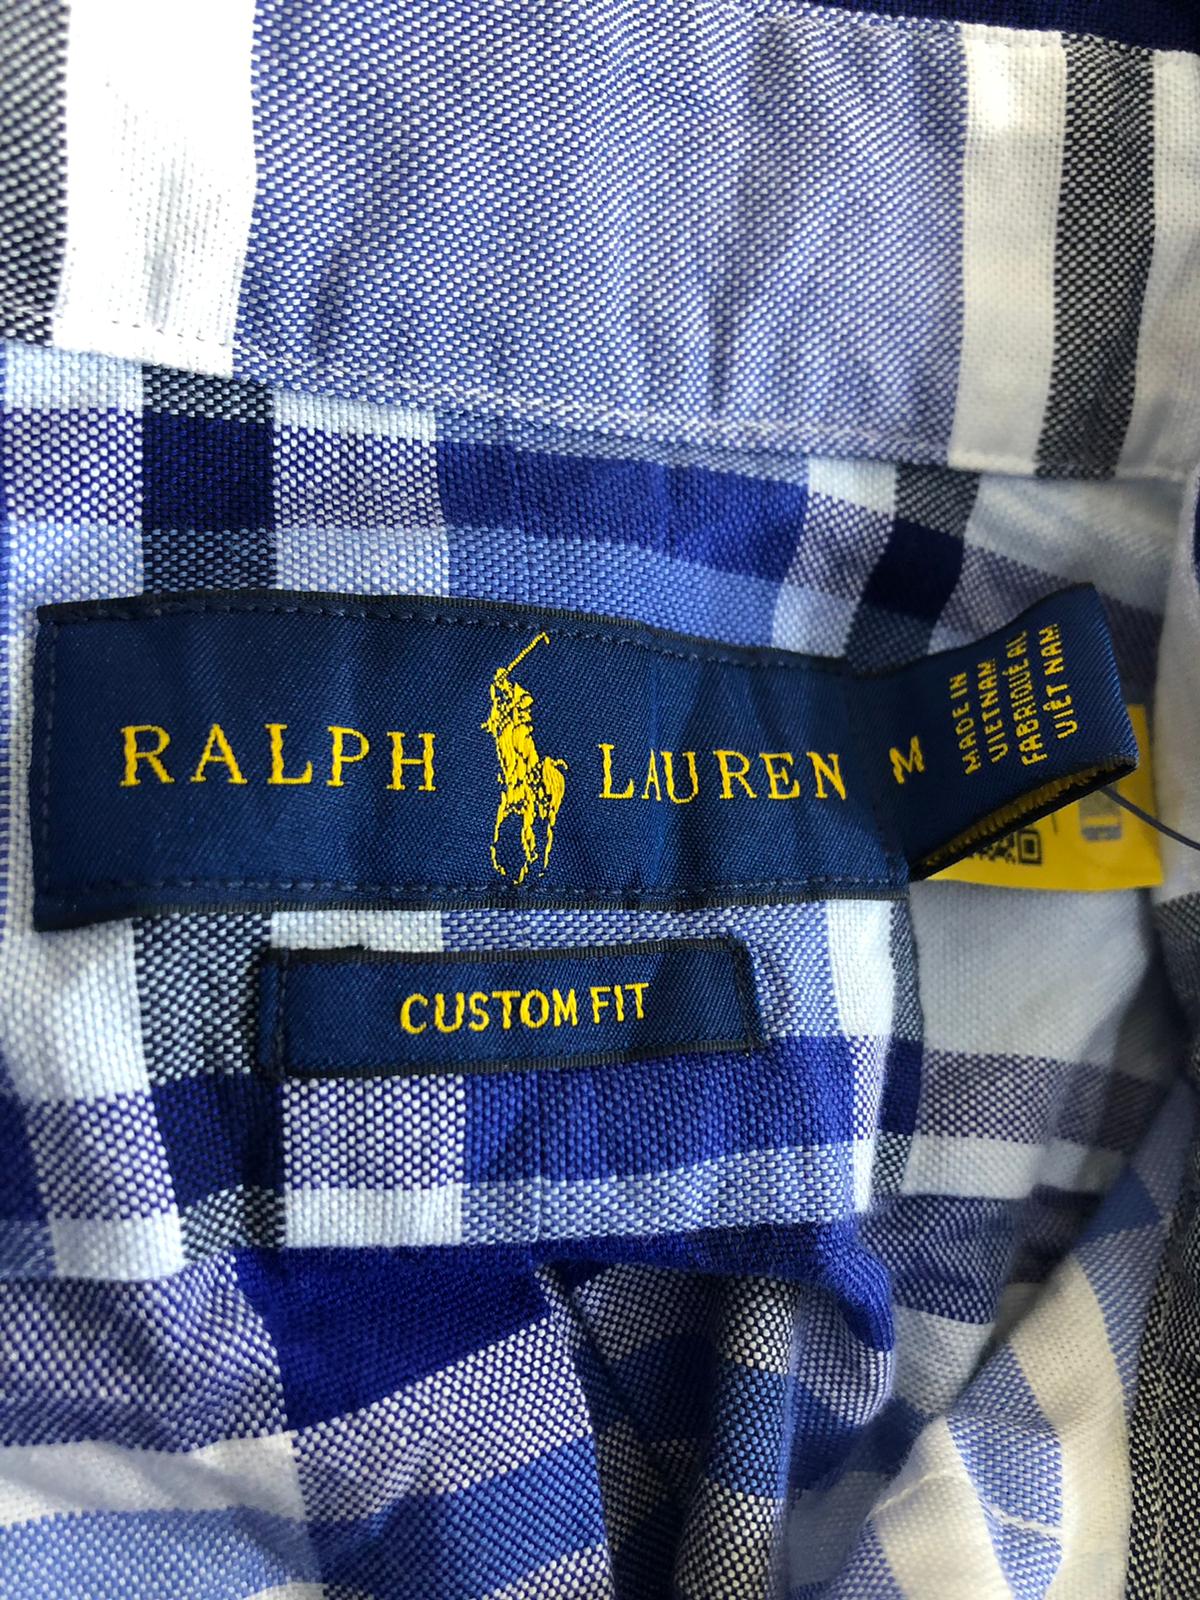 50x Grade A Polo Ralph Lauren Cotton Men's Shirts